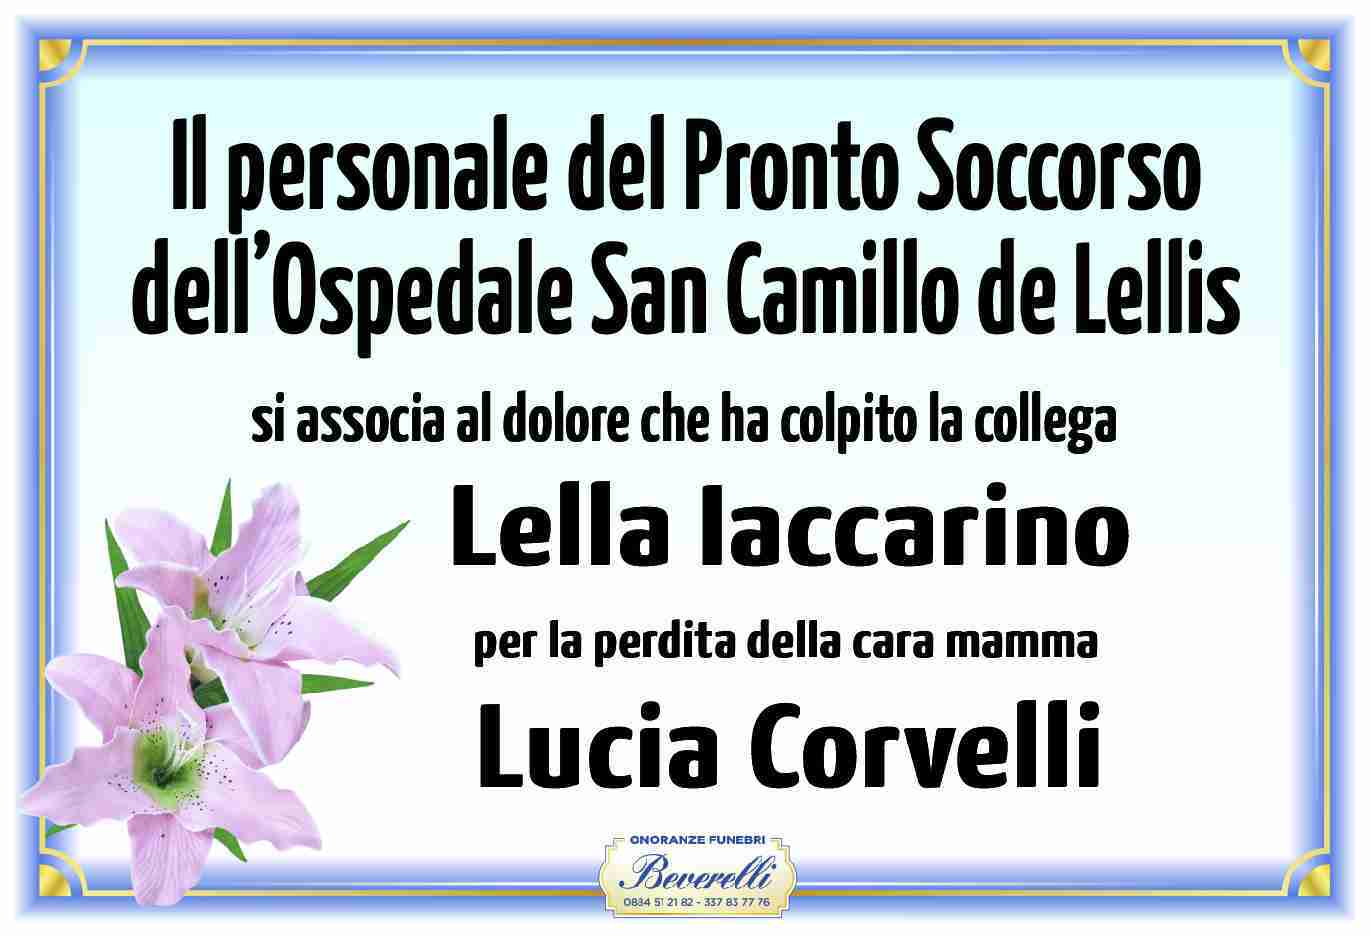 Lucia Corvelli